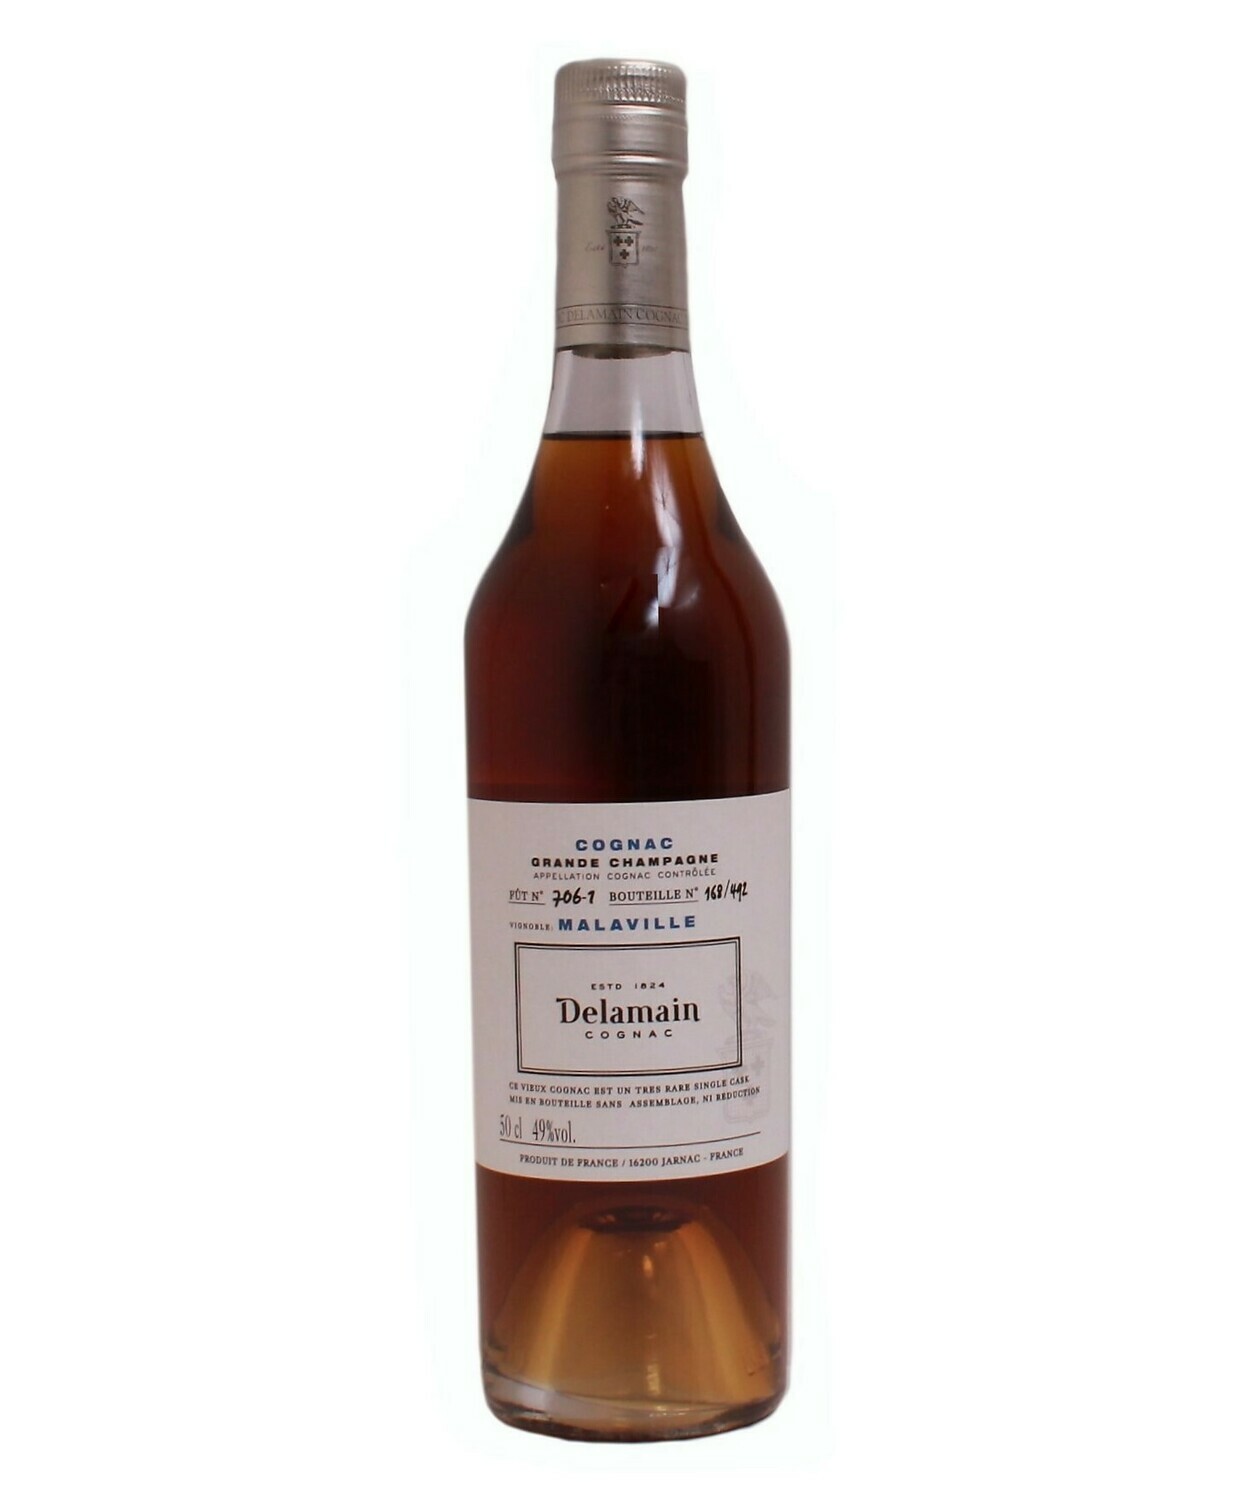 Delamain Cognac Malaville 49% 50CL